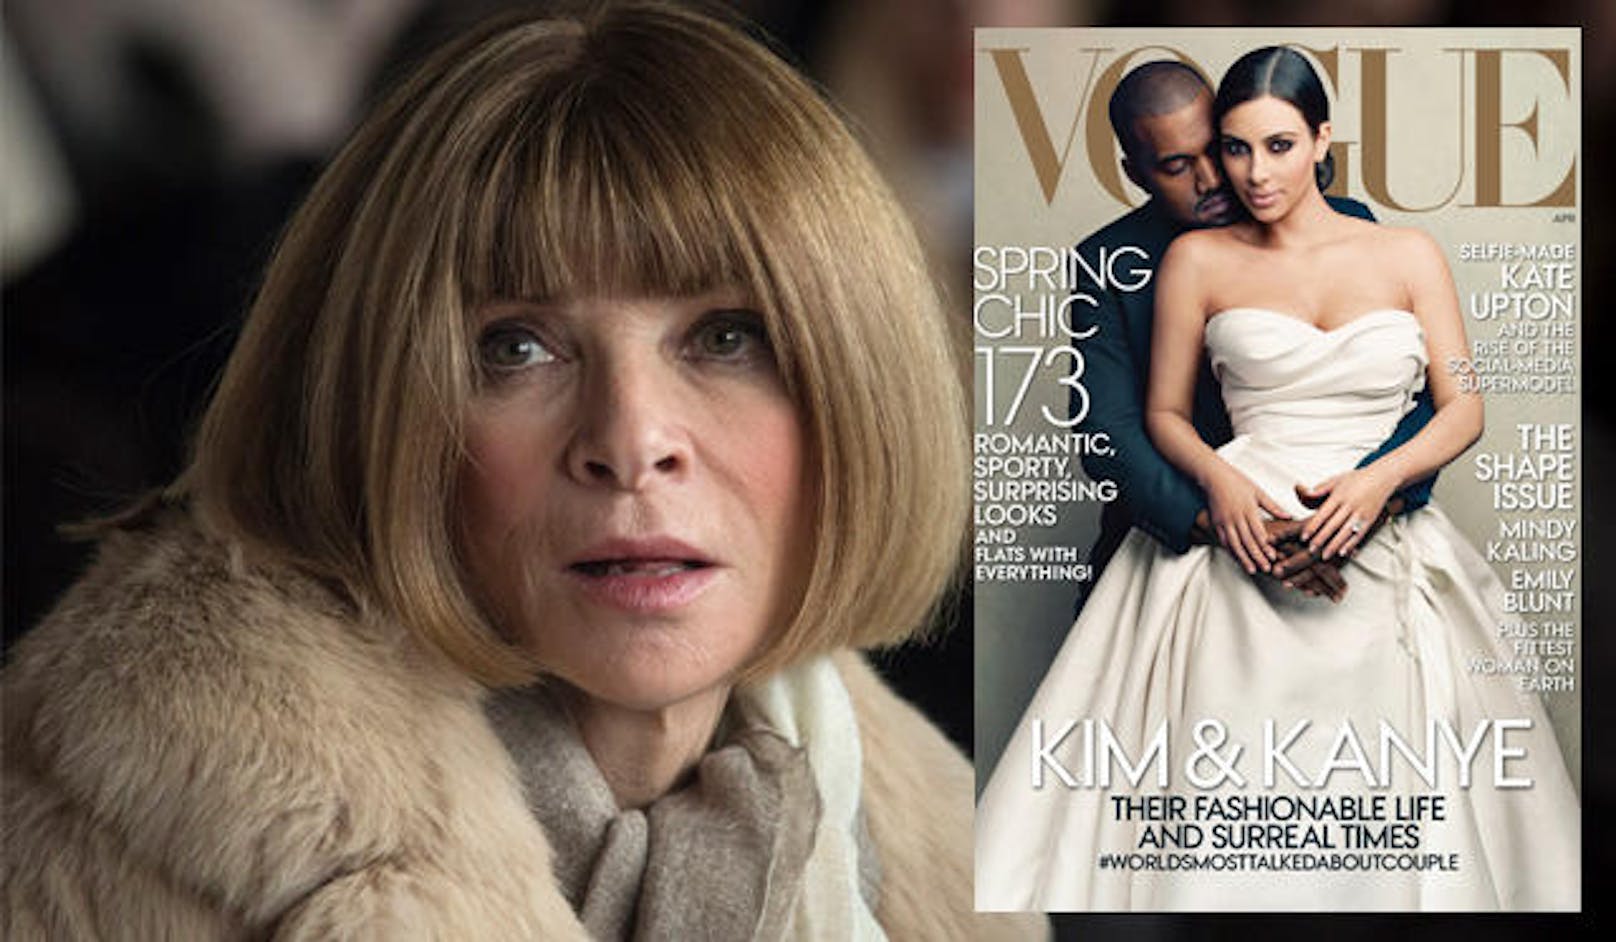 Anna Wintour sprach über Kimye am Cover der "Vogue".